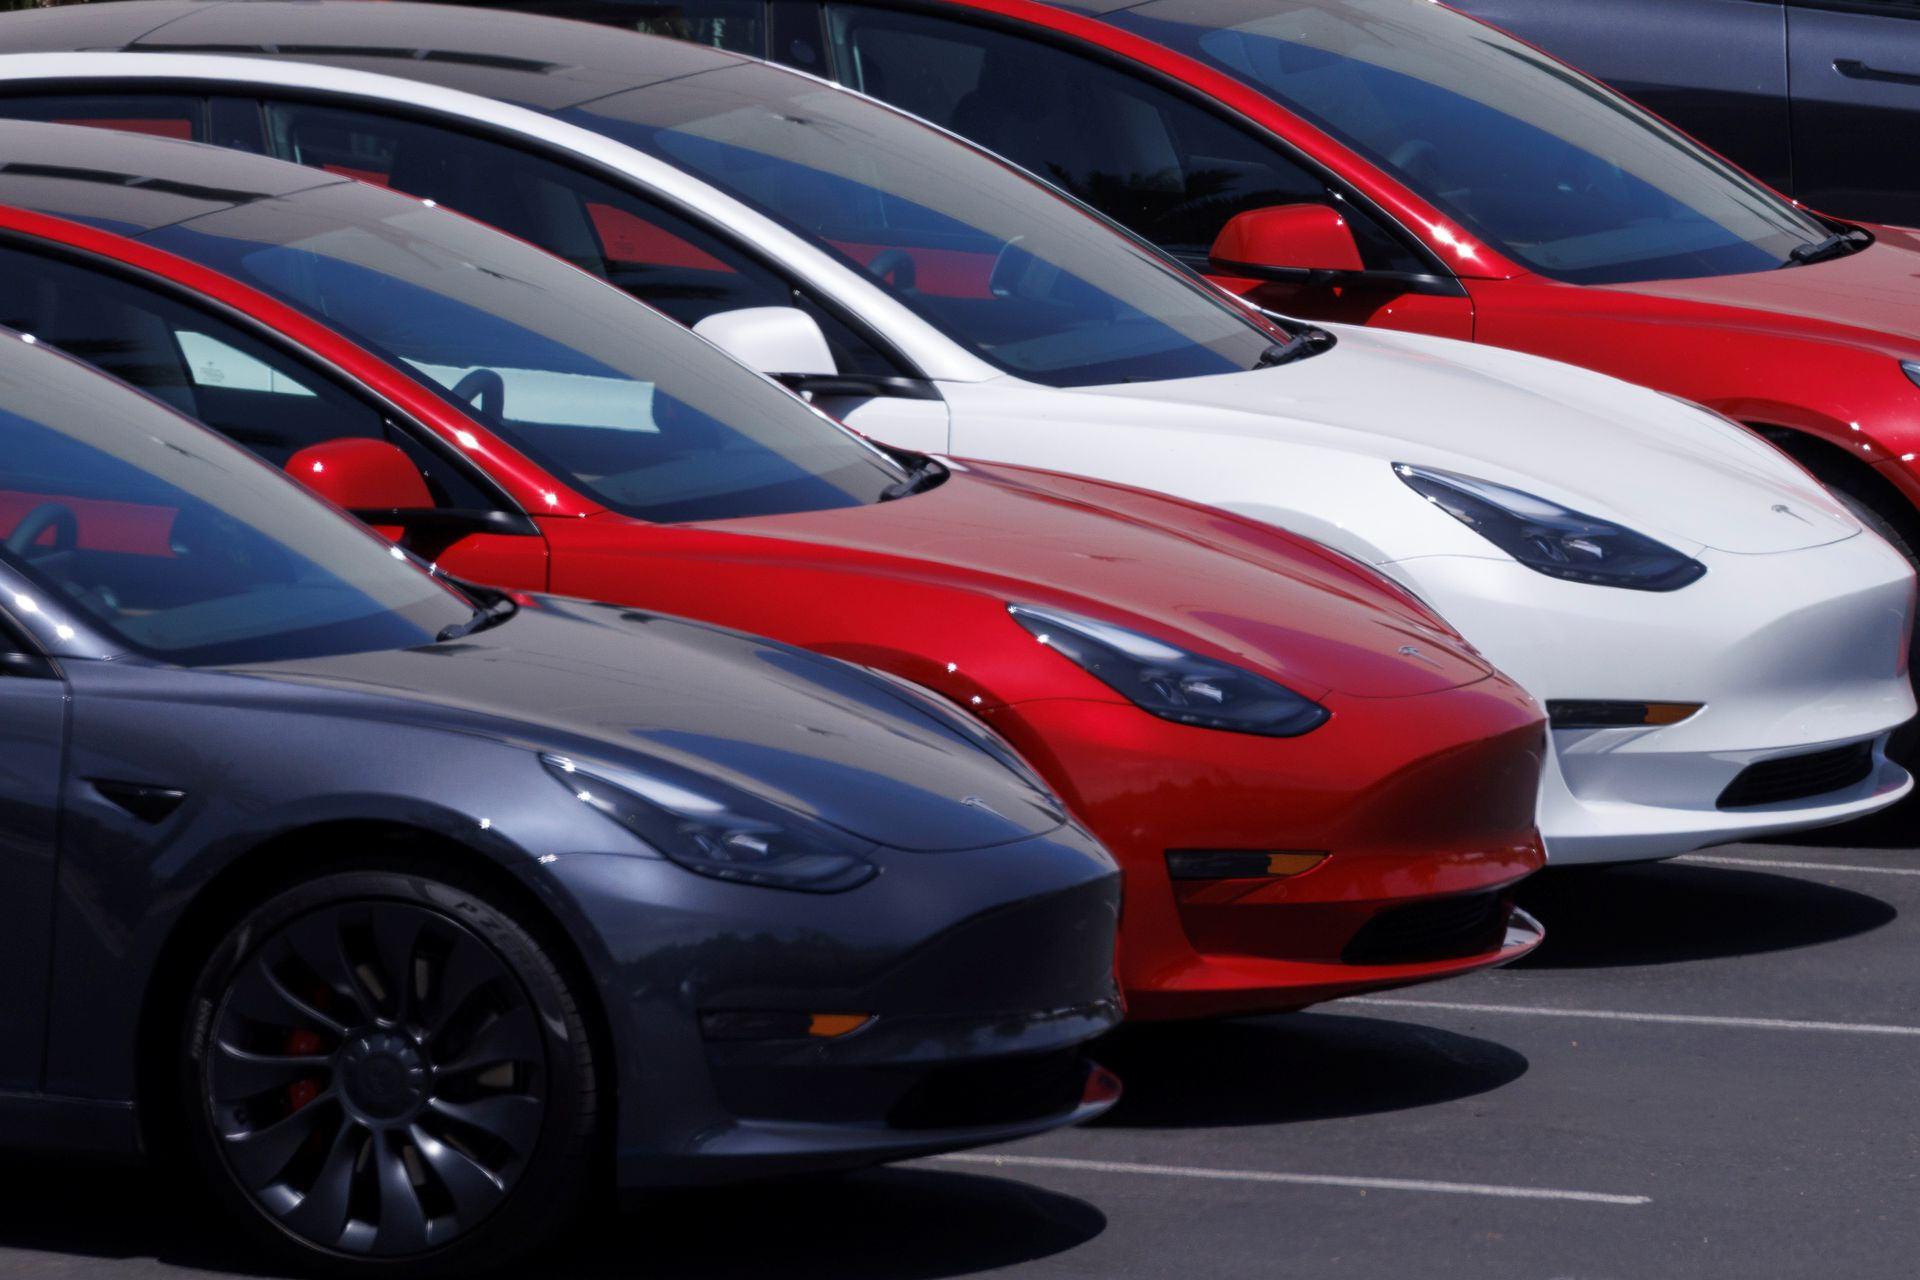 مرجع متخصصين ايران چند خودرو ماشين تسلا Tesla در رنگ هاي مختلف از نماي جلو روز روشن